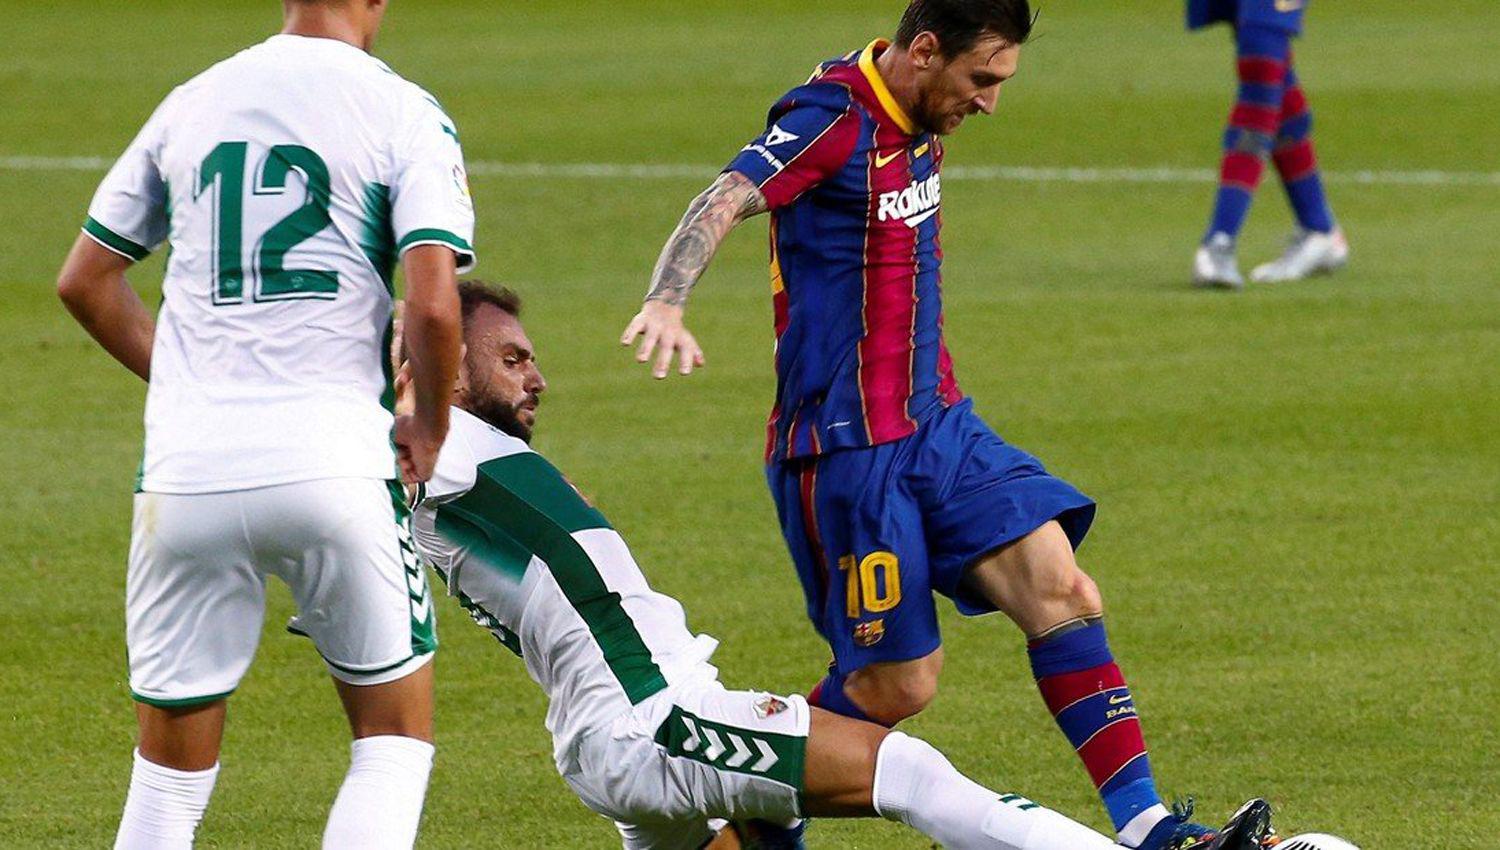 El Barcelona de Messi derrotoacute al Elche por la miacutenima diferencia